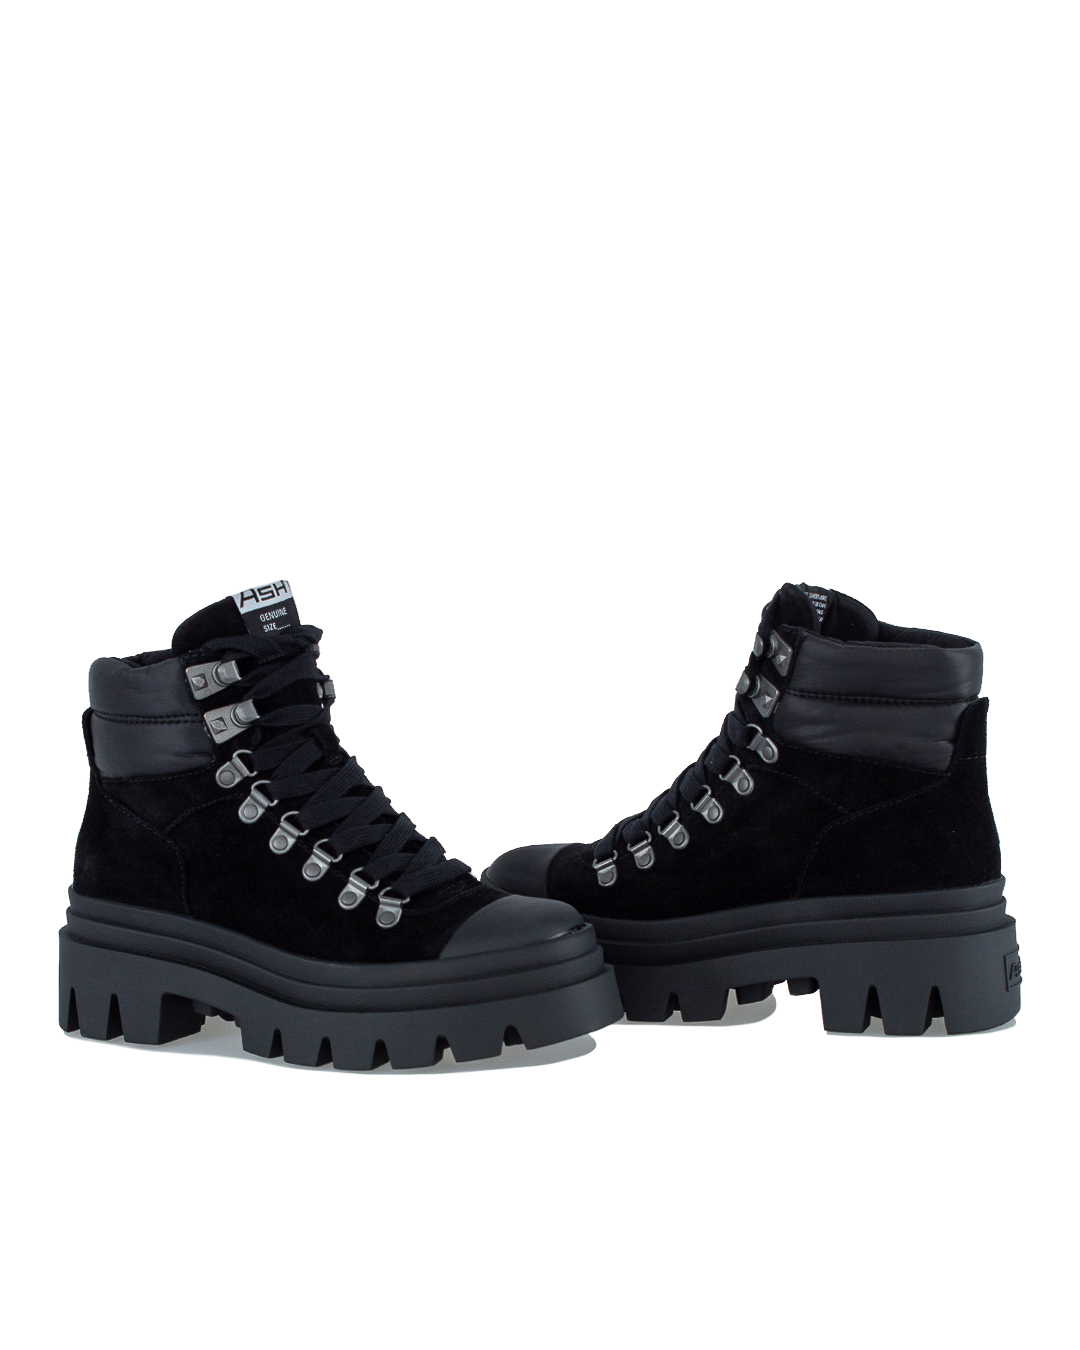 кожаные ботинки ASH 7AH.AH117727.T черный 36, размер 36 - фото 2